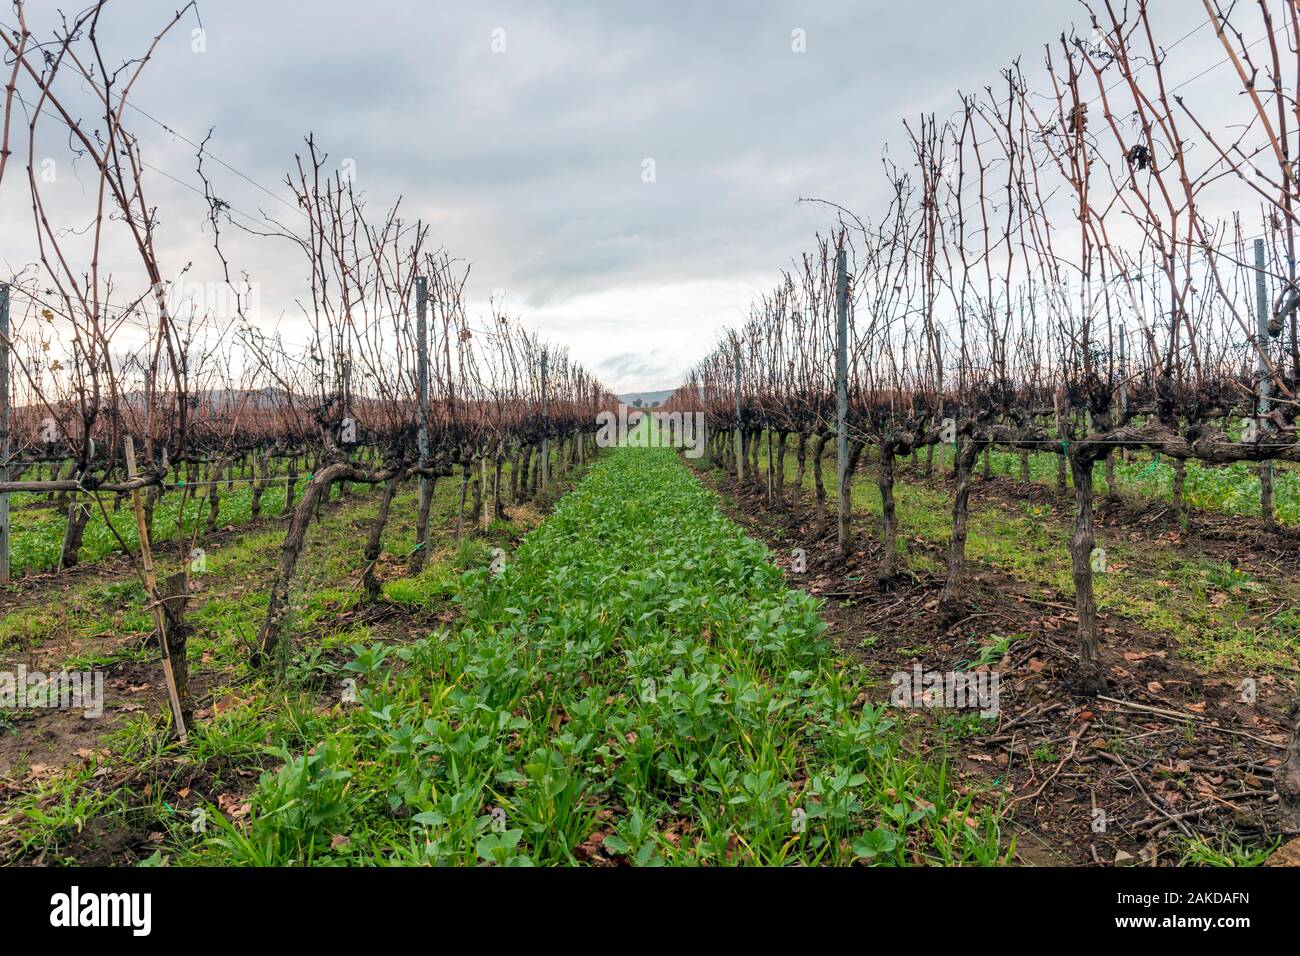 Campo coltivato a vigneto per la produzione di vino. Vigne potate e senza uva disposte in righe, nella stagione invernale. Foto Stock